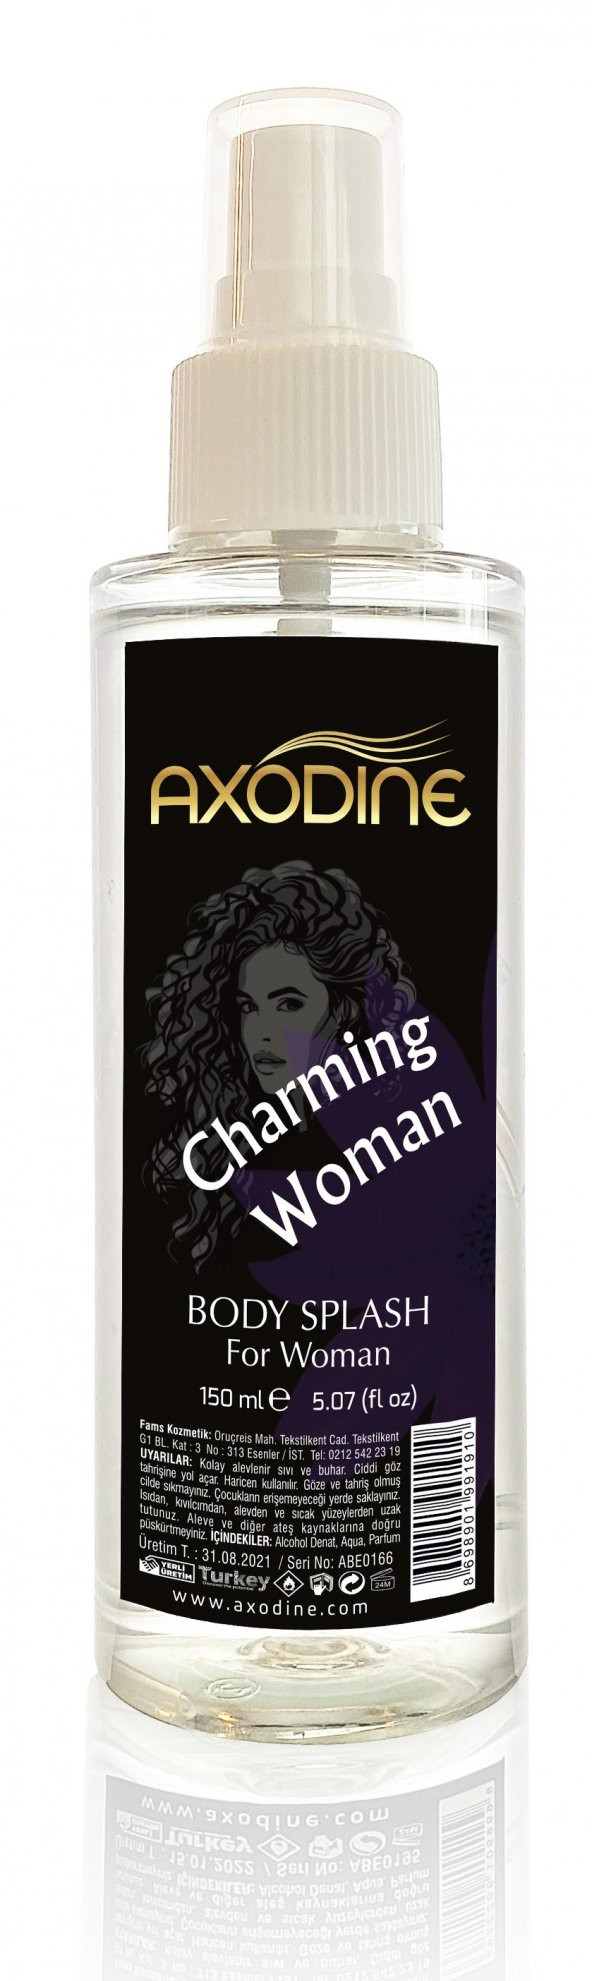 Axodine Charming Kadın Body Splash Vücut Spreyi Body Mist 150ml